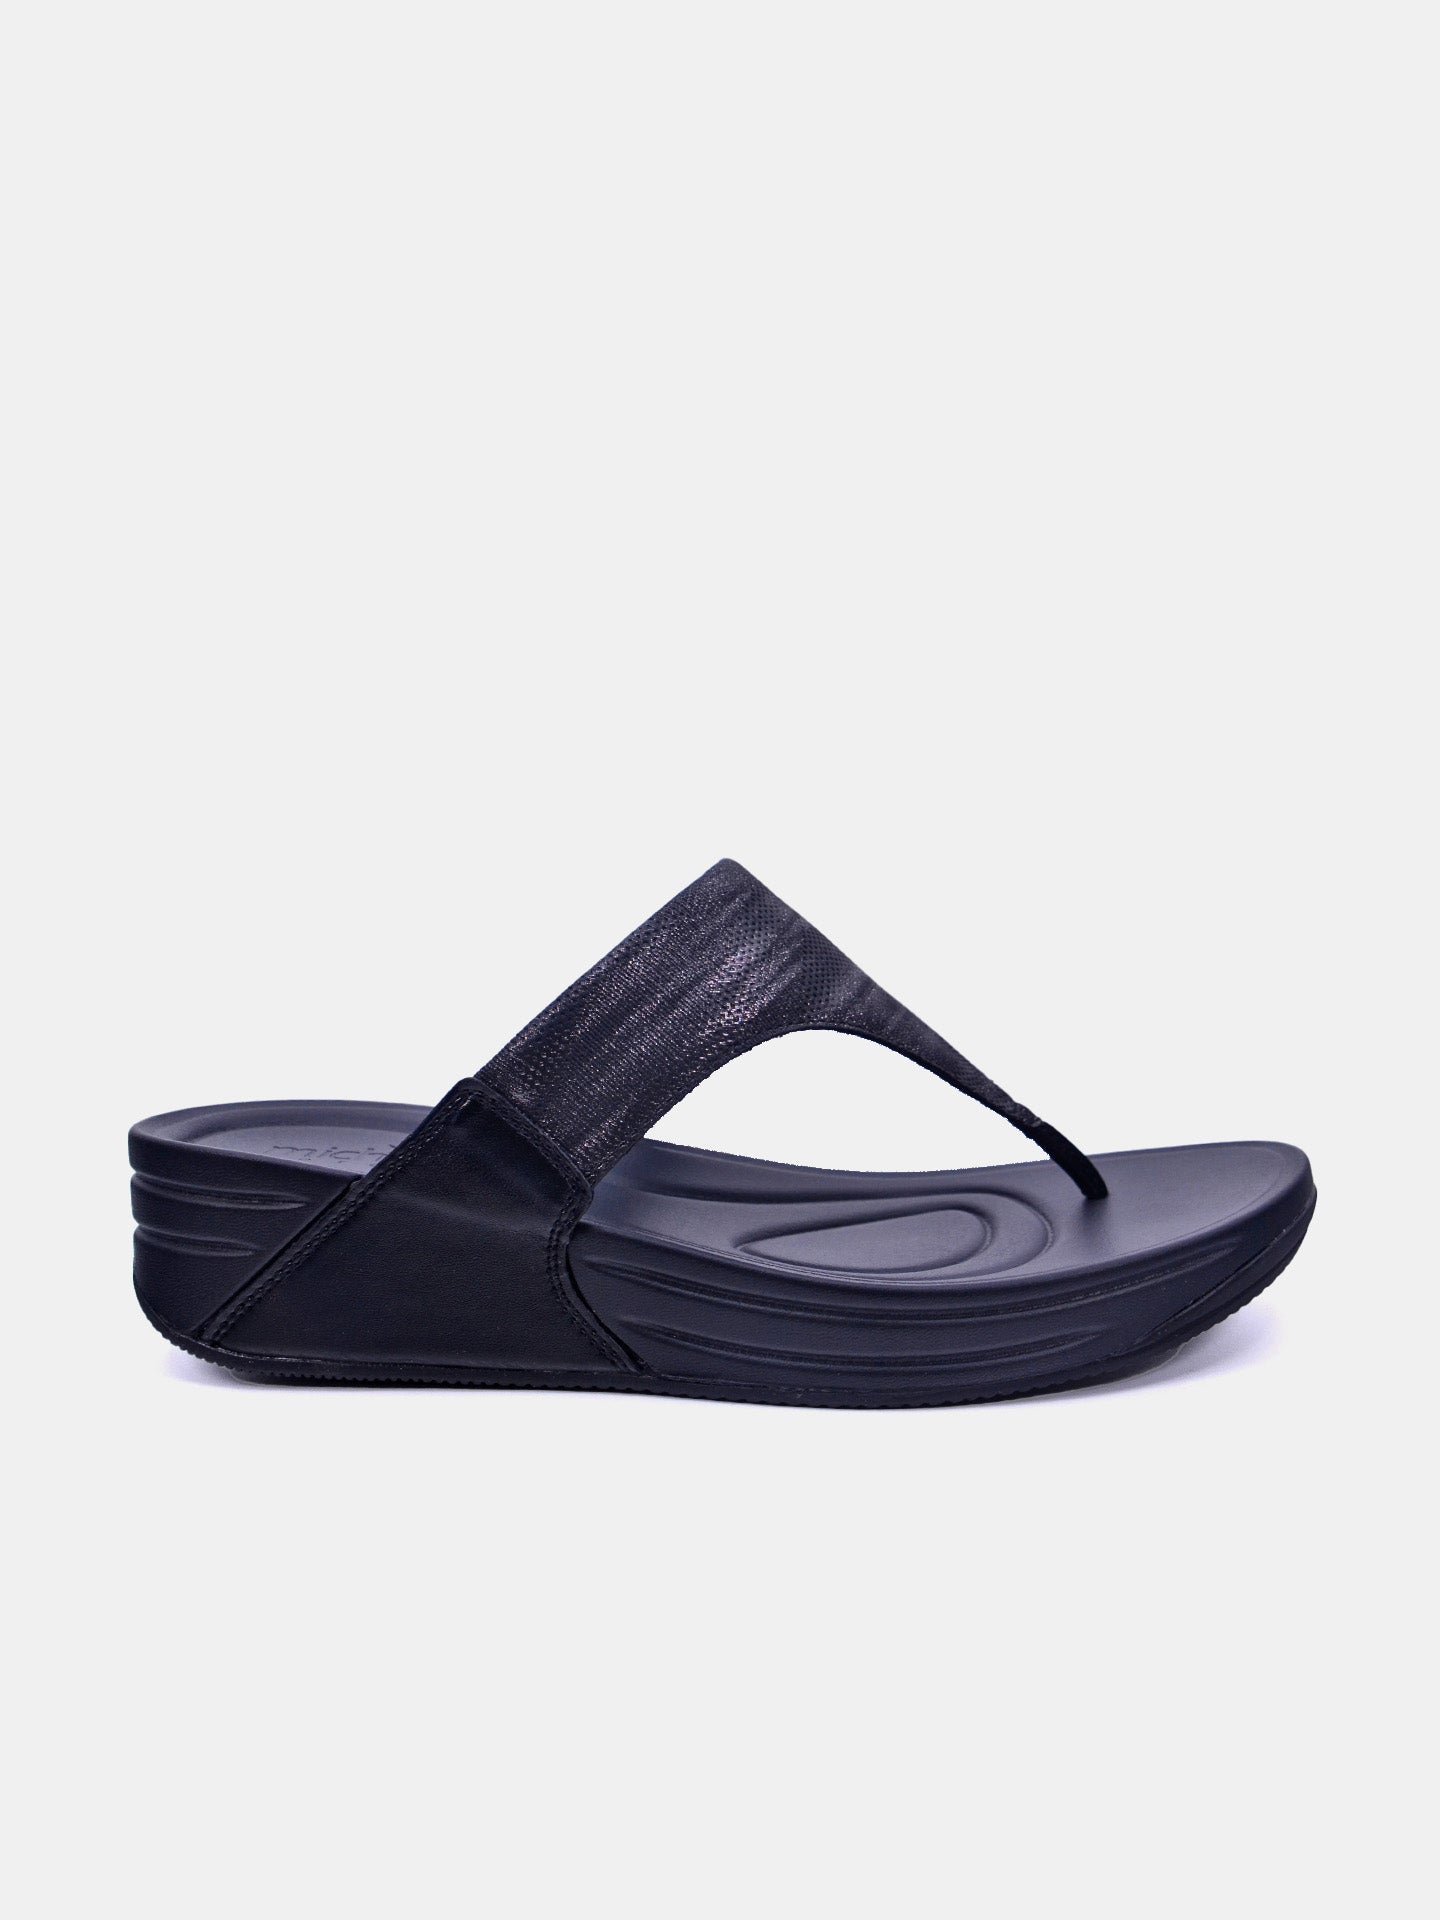 Michelle Morgan 214RJ671 Women's Sandals #color_Black